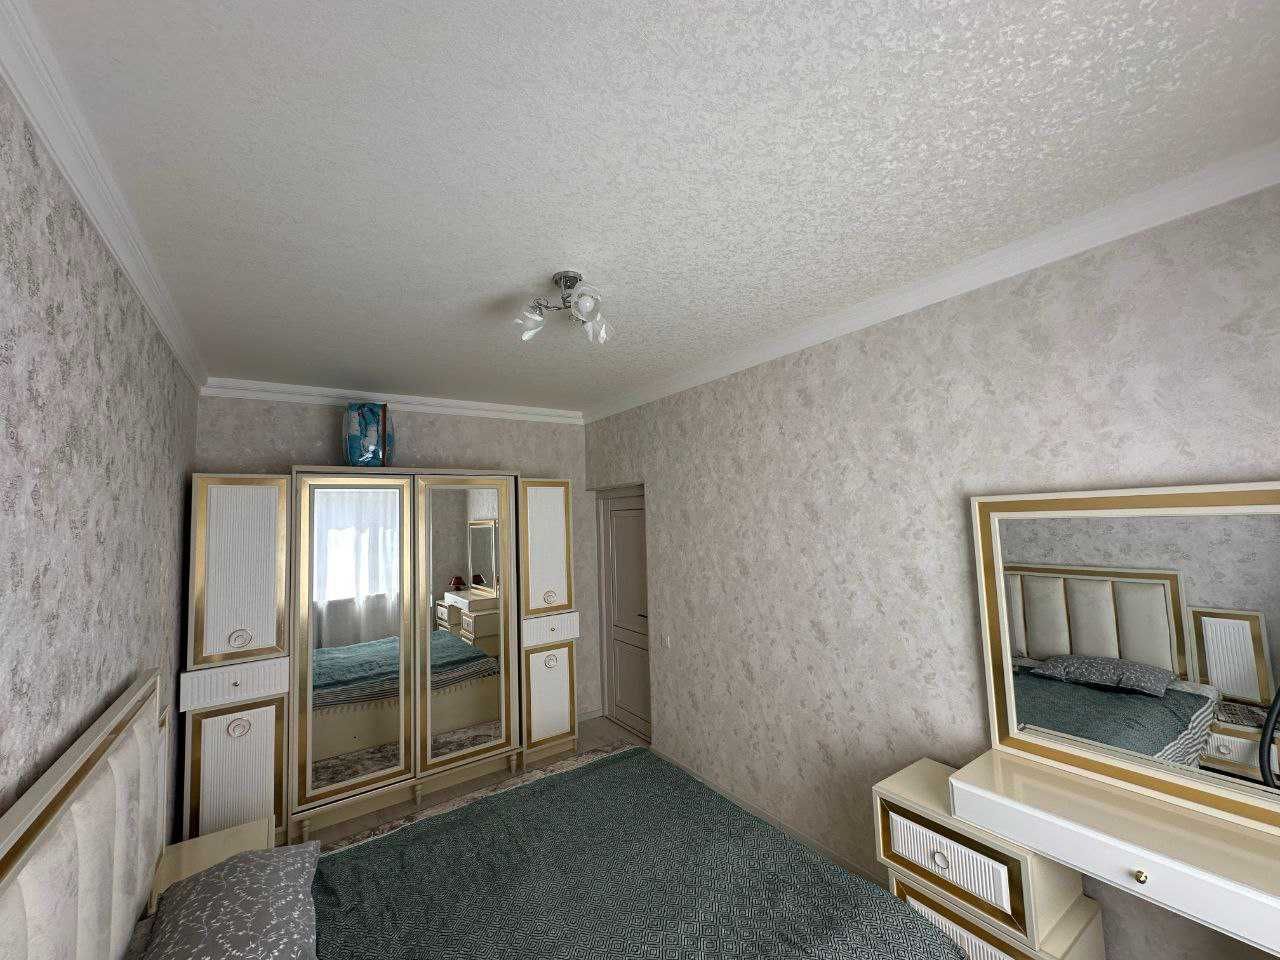 (К129470) Продается 3-х комнатная квартира в Шайхантахурском районе.